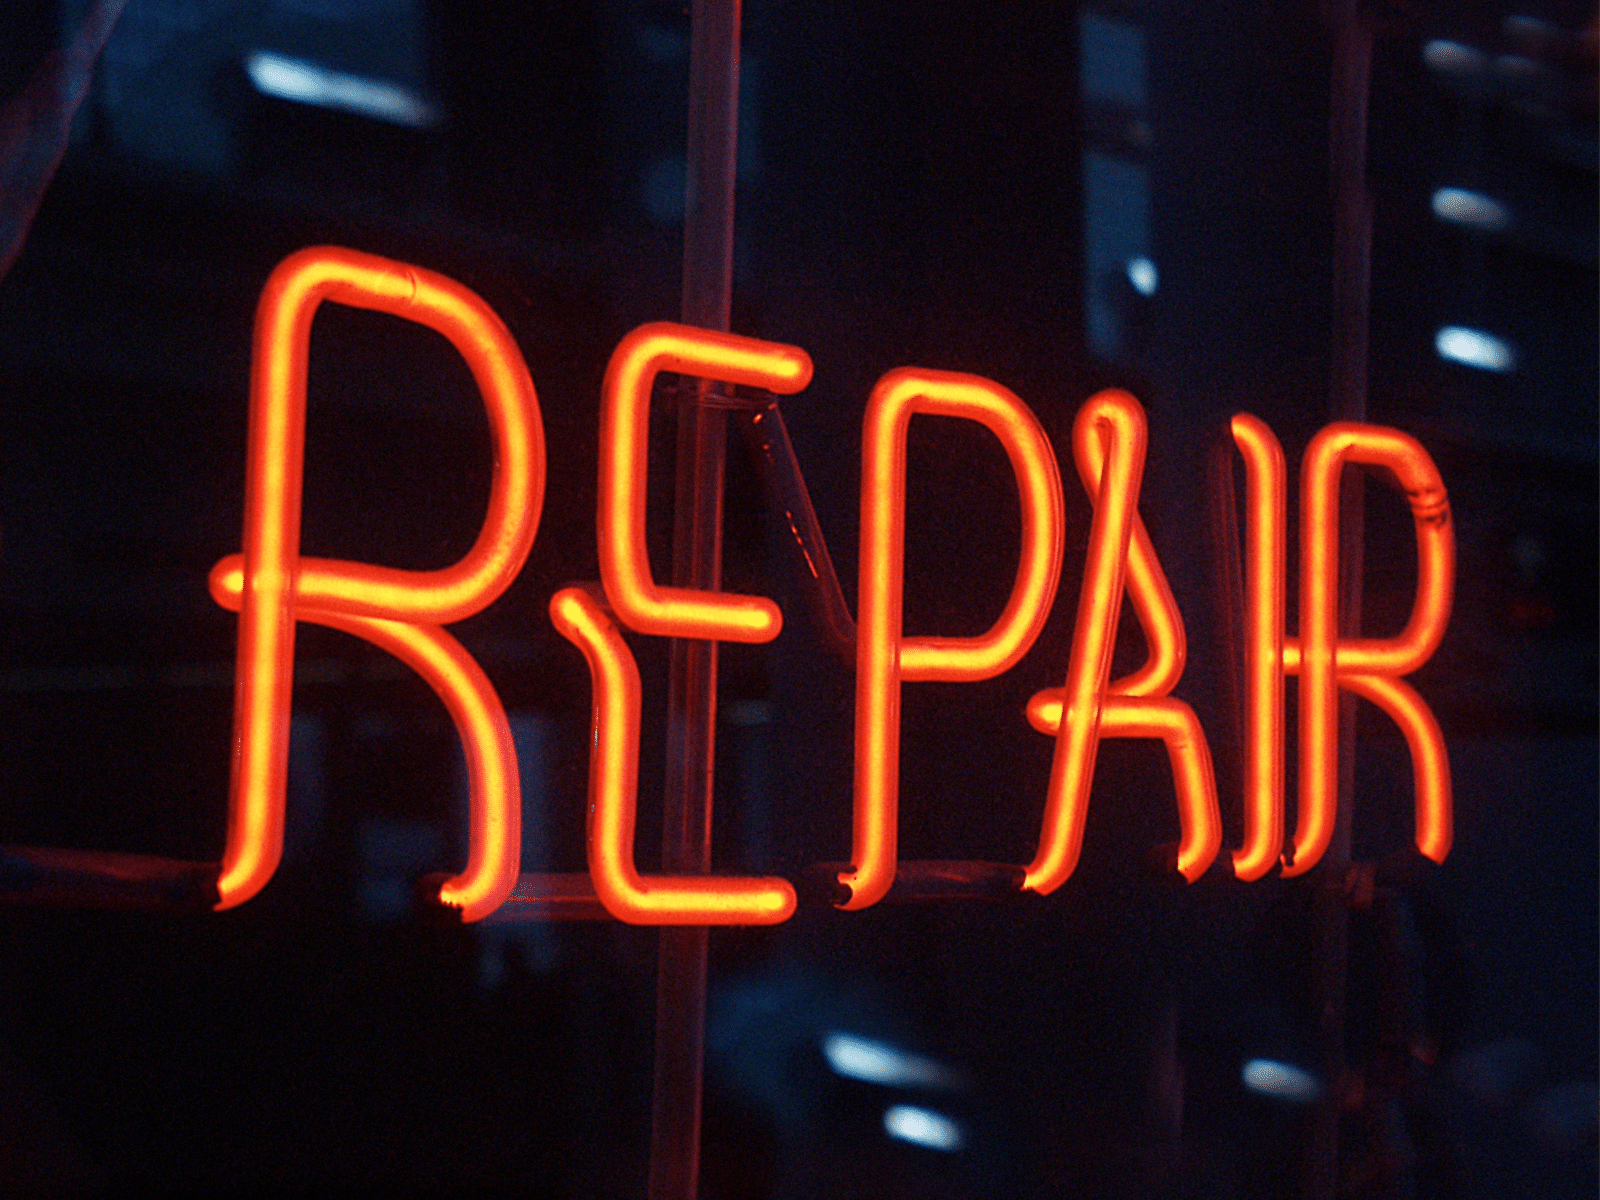 Repair sign